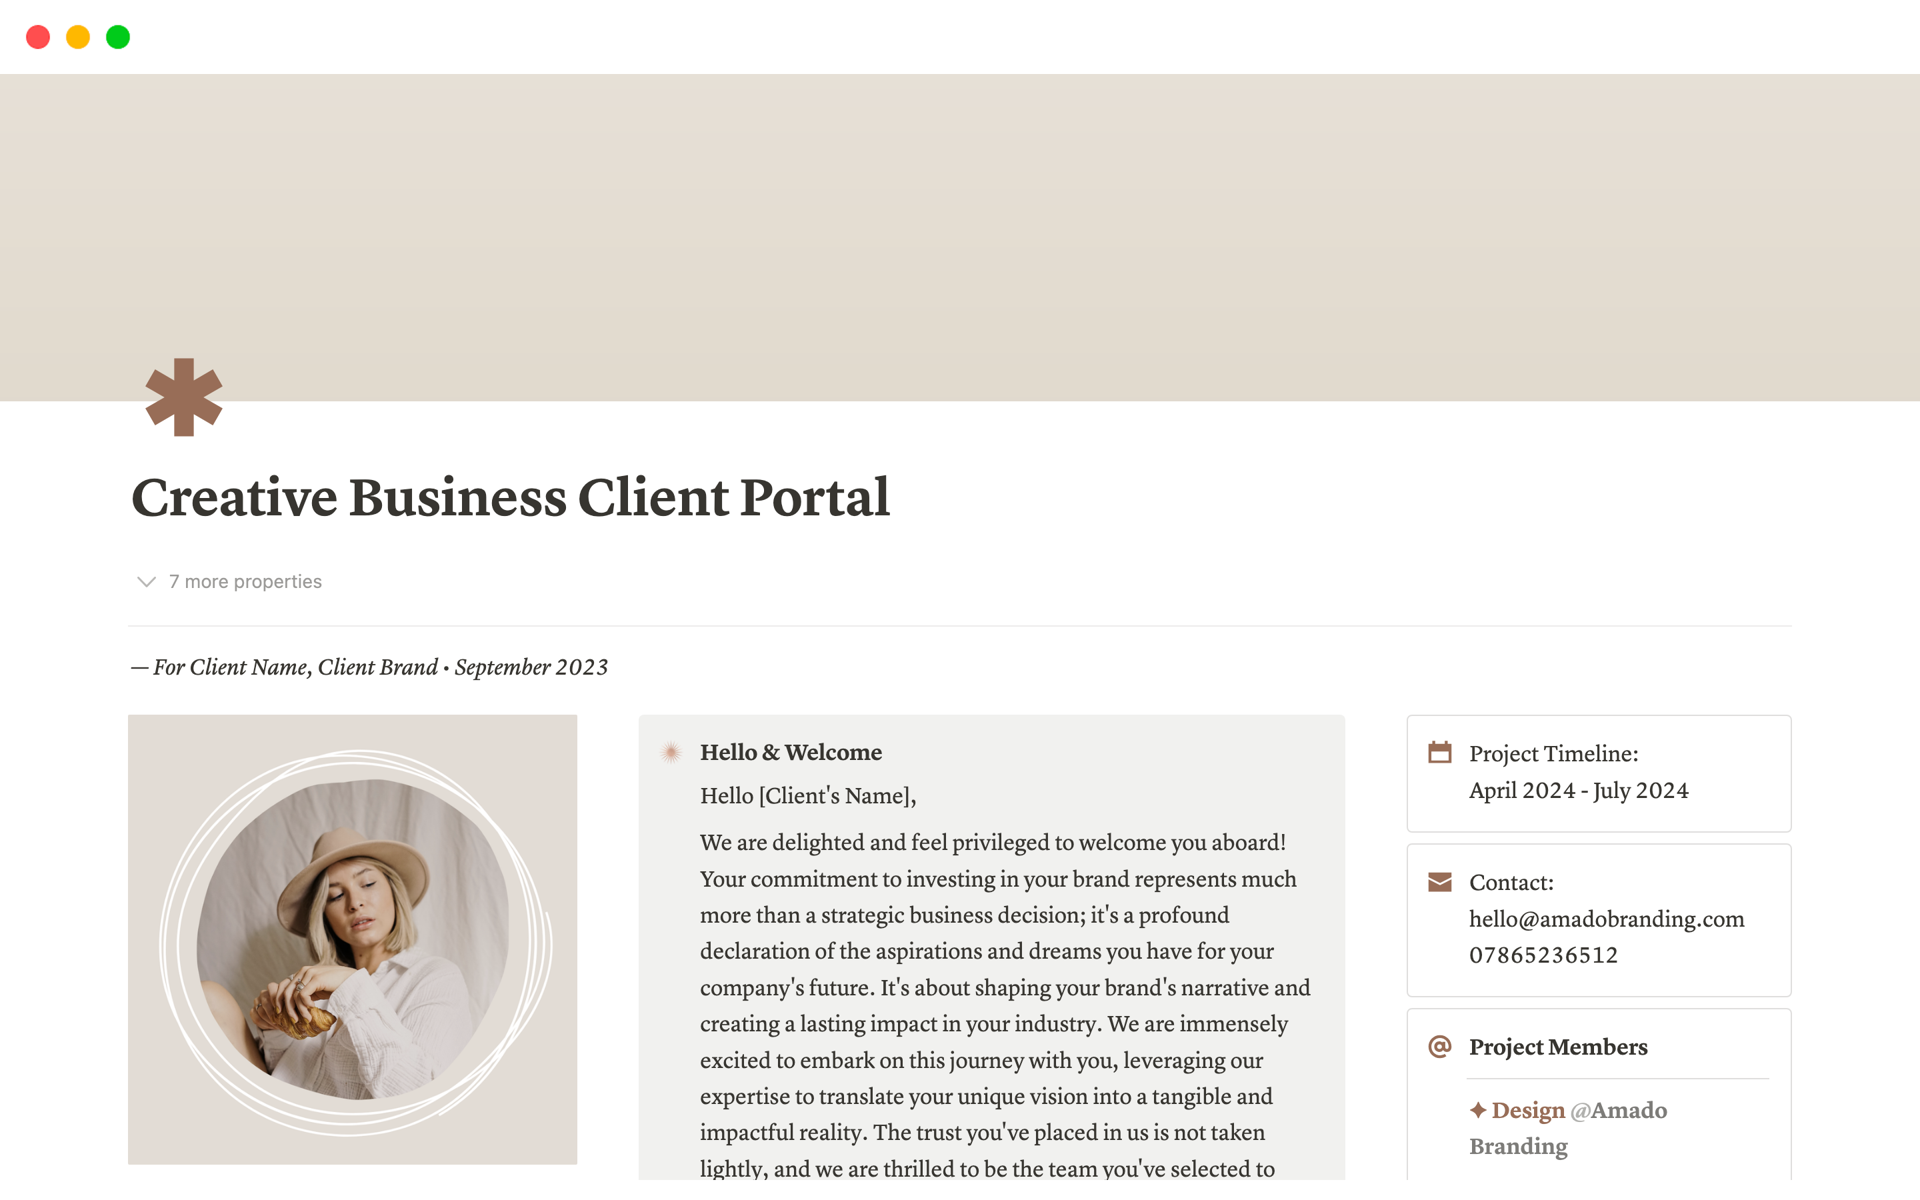 Vista previa de una plantilla para Creative Business Client Portal